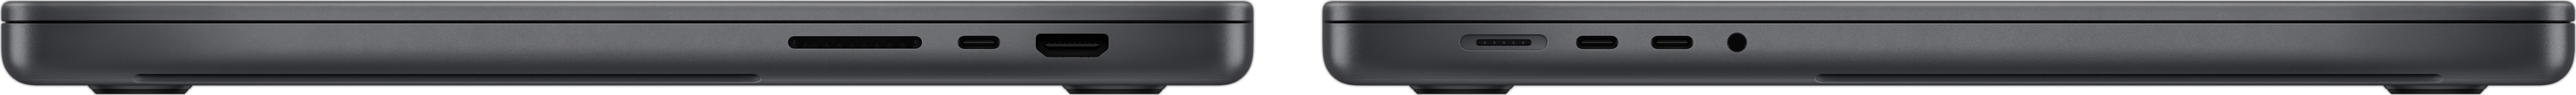 MacBook Pro külgvaade, millel on näha SDXC kaardipesa, kolm Thunderbolt 4 liidest, HDMI liides, MagSafe 3 laadimisliides ja kõrvaklapipistik.